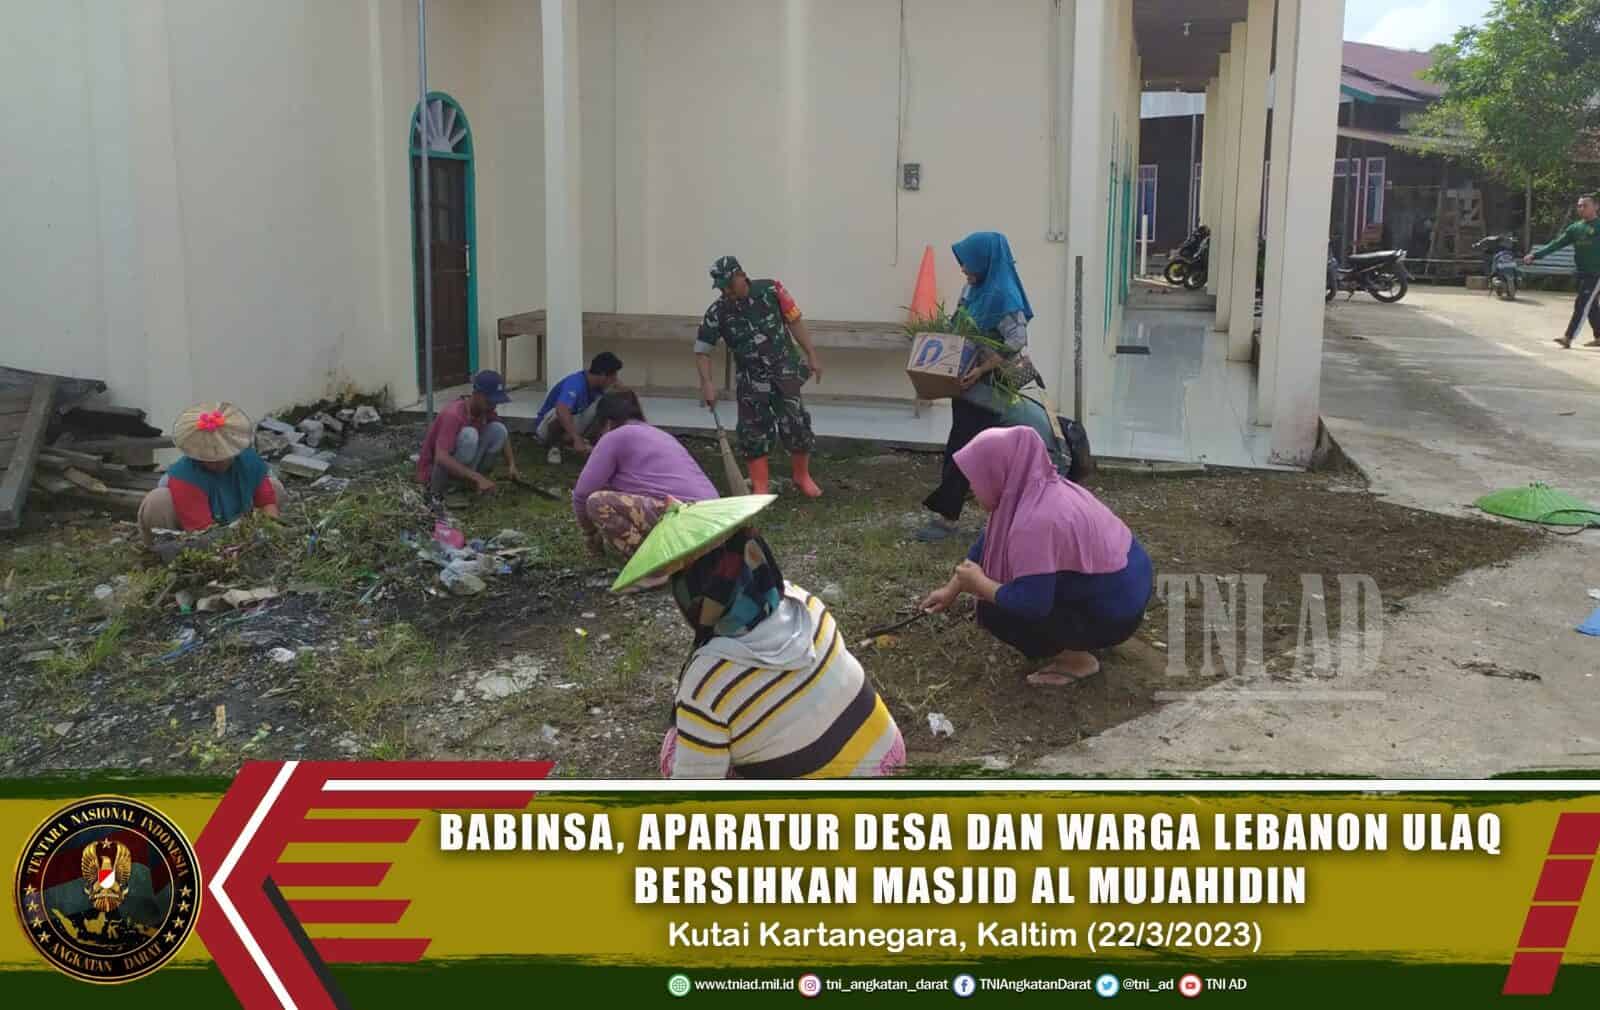 Menyambut Datangnya Bulan Ramadhan, Babinsa, Aparatur Desa dan Warga Lebaho Ulaq Bersihkan Masjid Al Mujahidin.